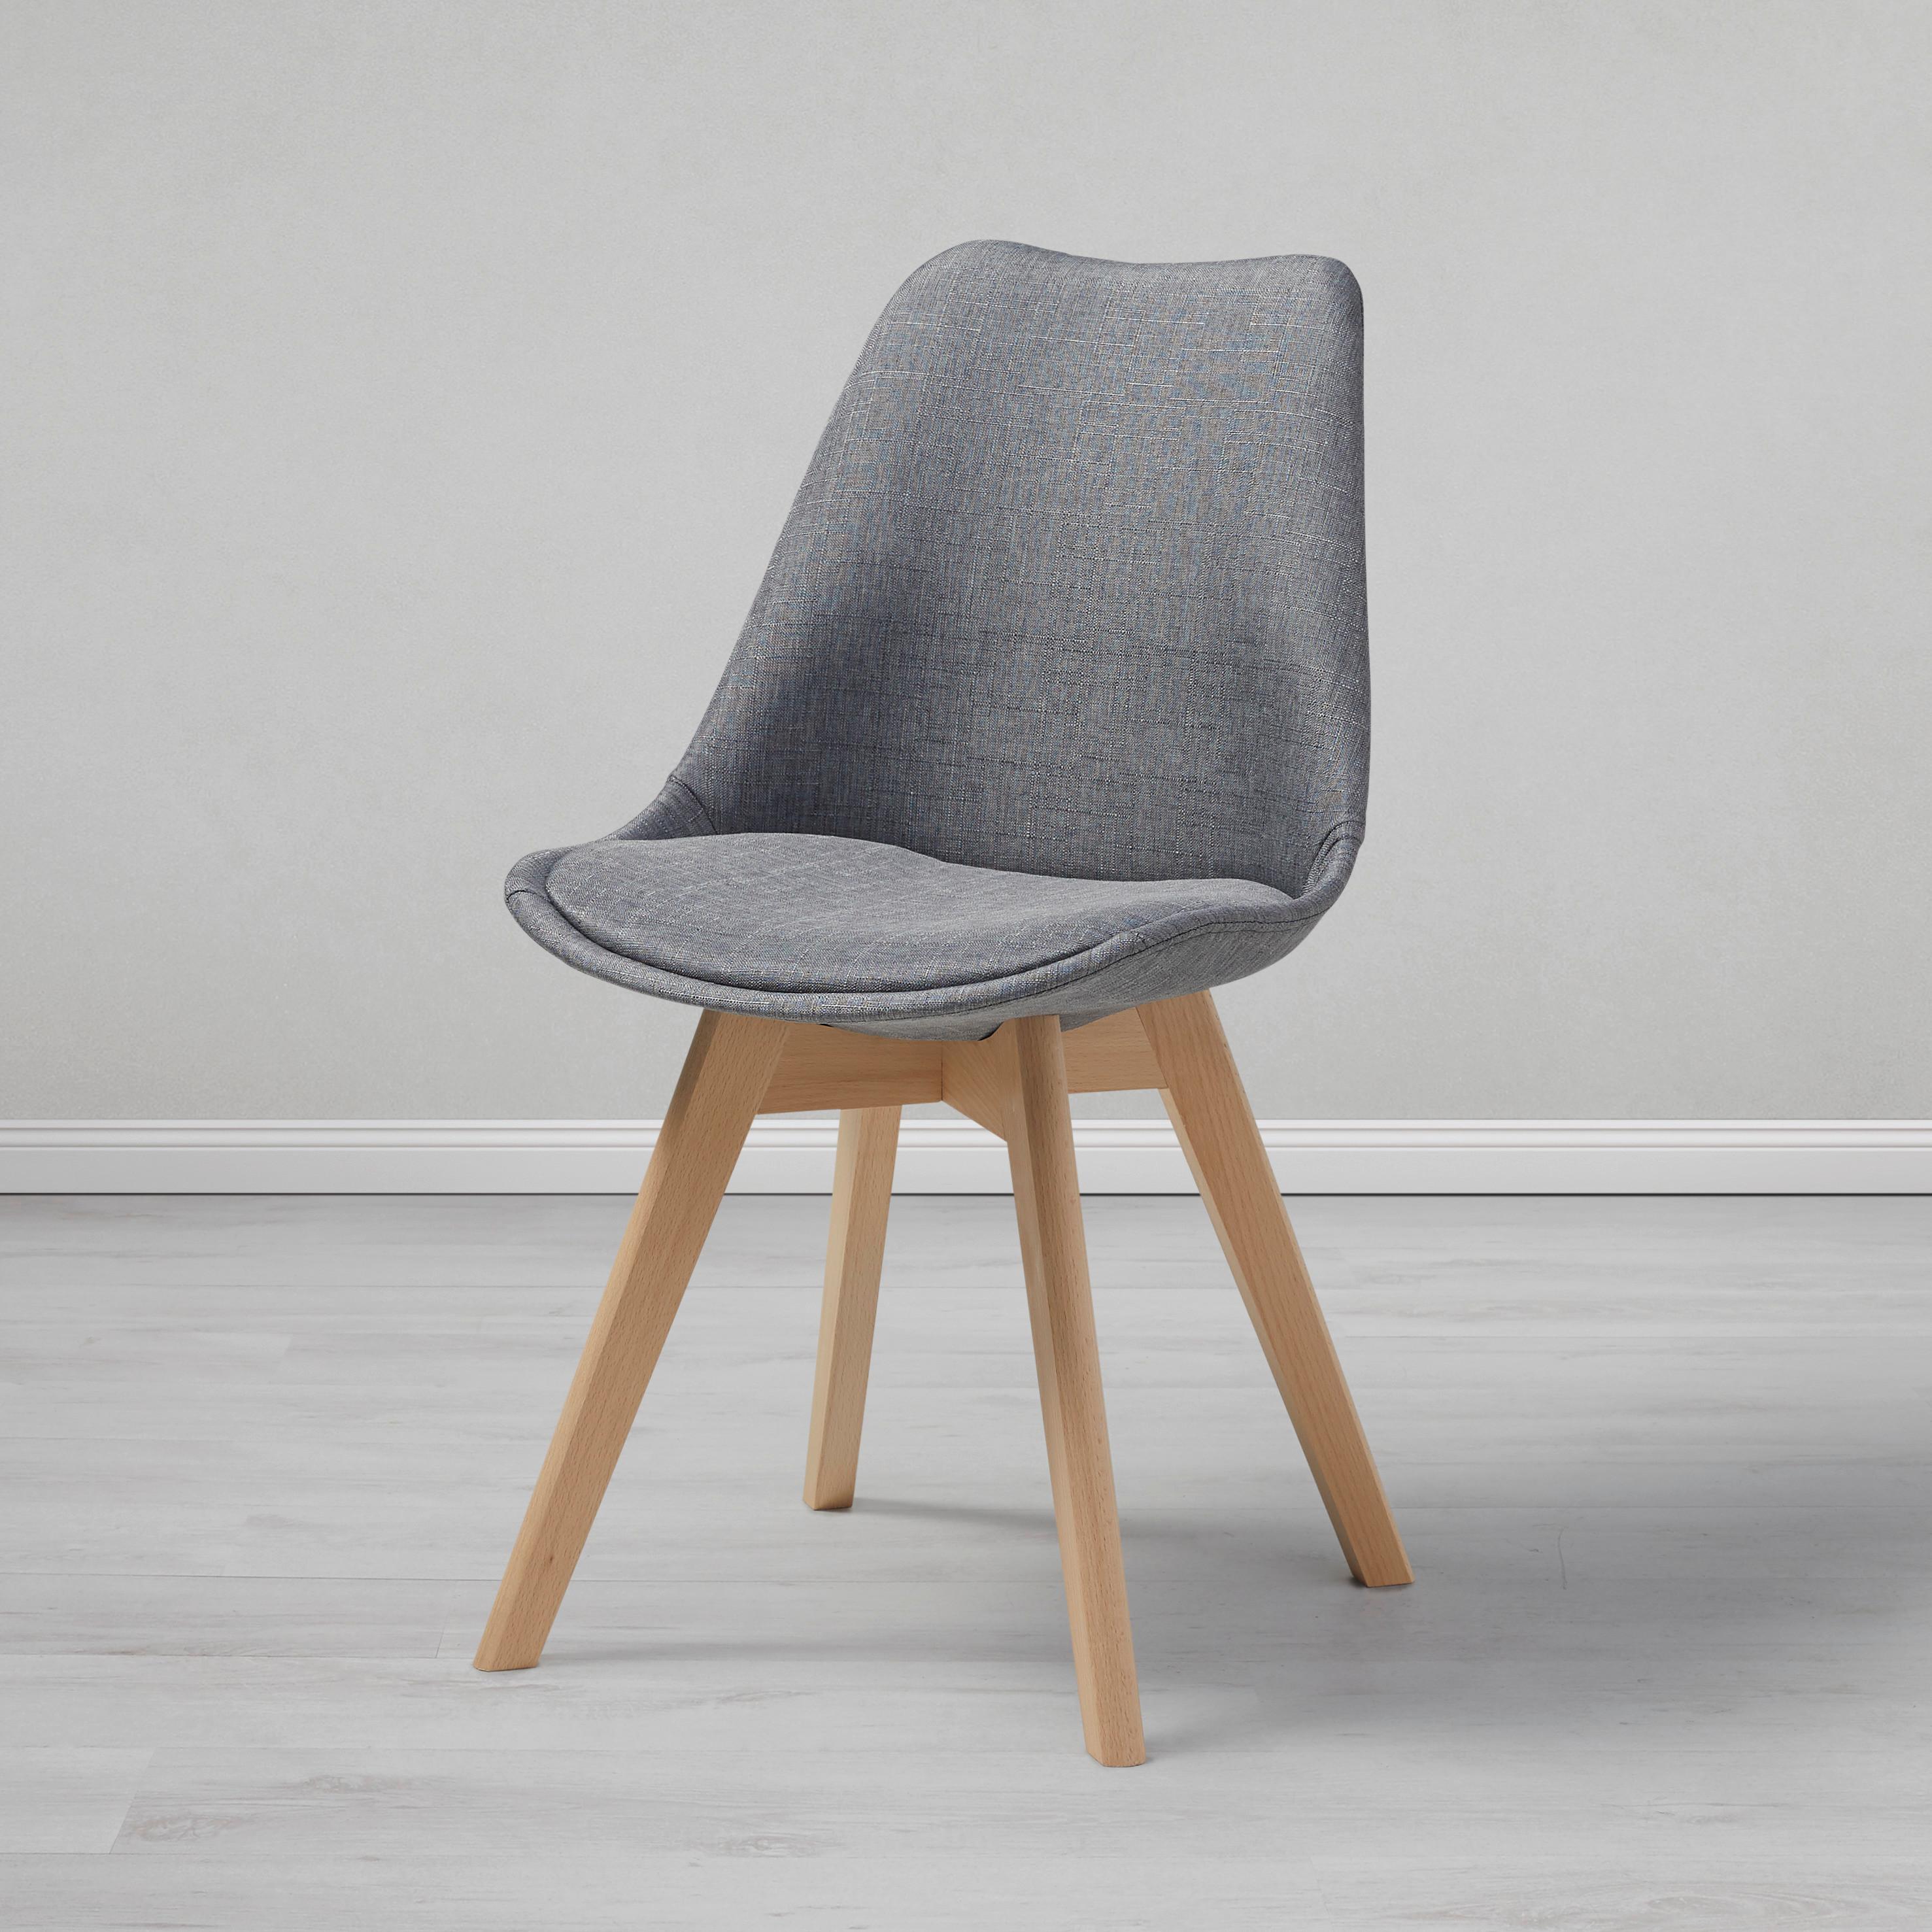 Jídelní Židle Rocksi - šedá/barvy buku, Moderní, dřevo/textil (48/82,5/43cm) - Modern Living